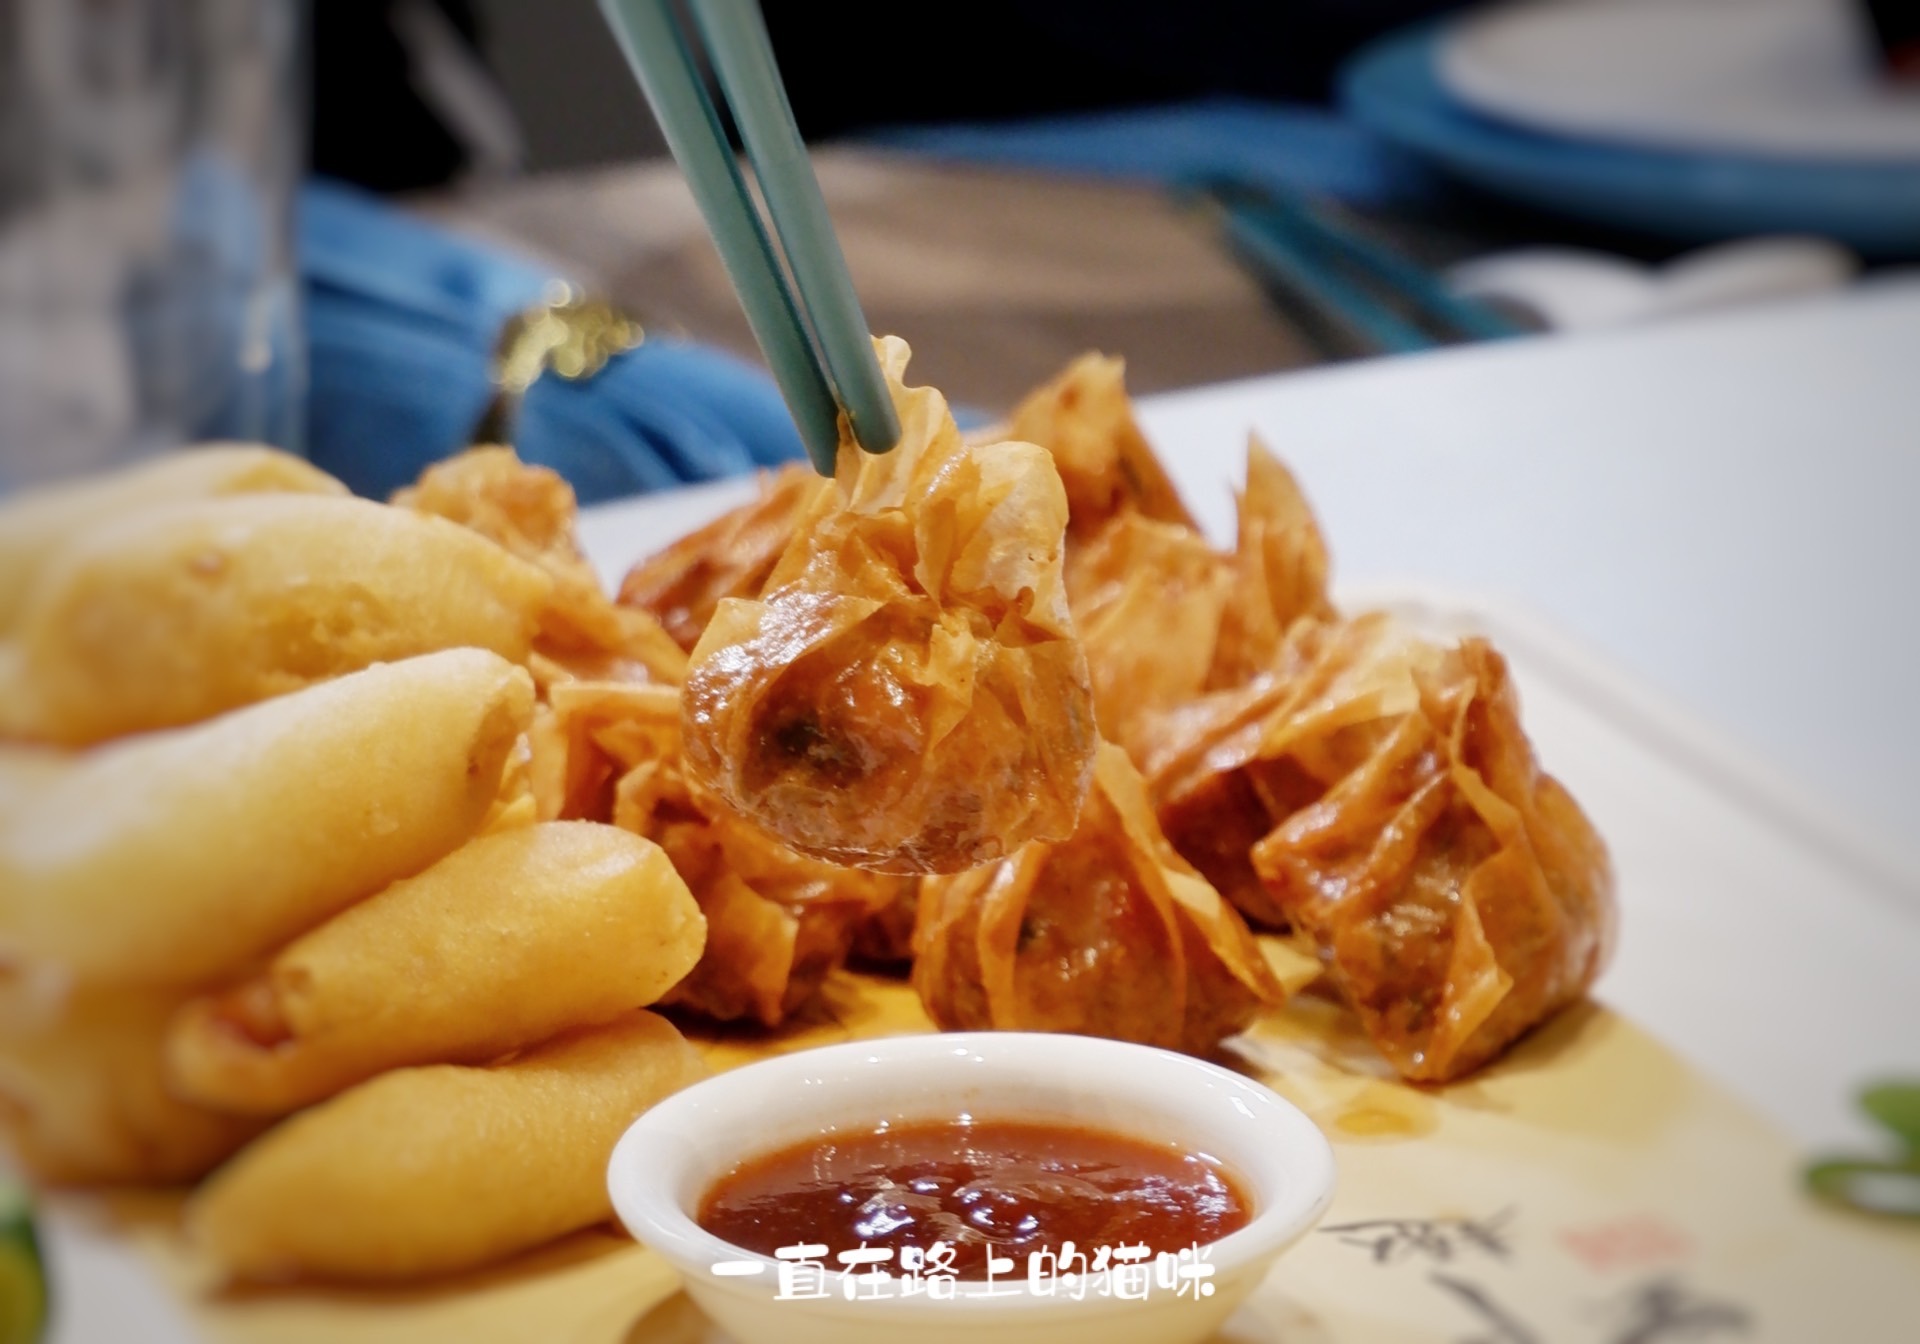 厦门美食聚集地明发商业广场里的美味海鲜餐厅:百里鲜·吃海鲜!